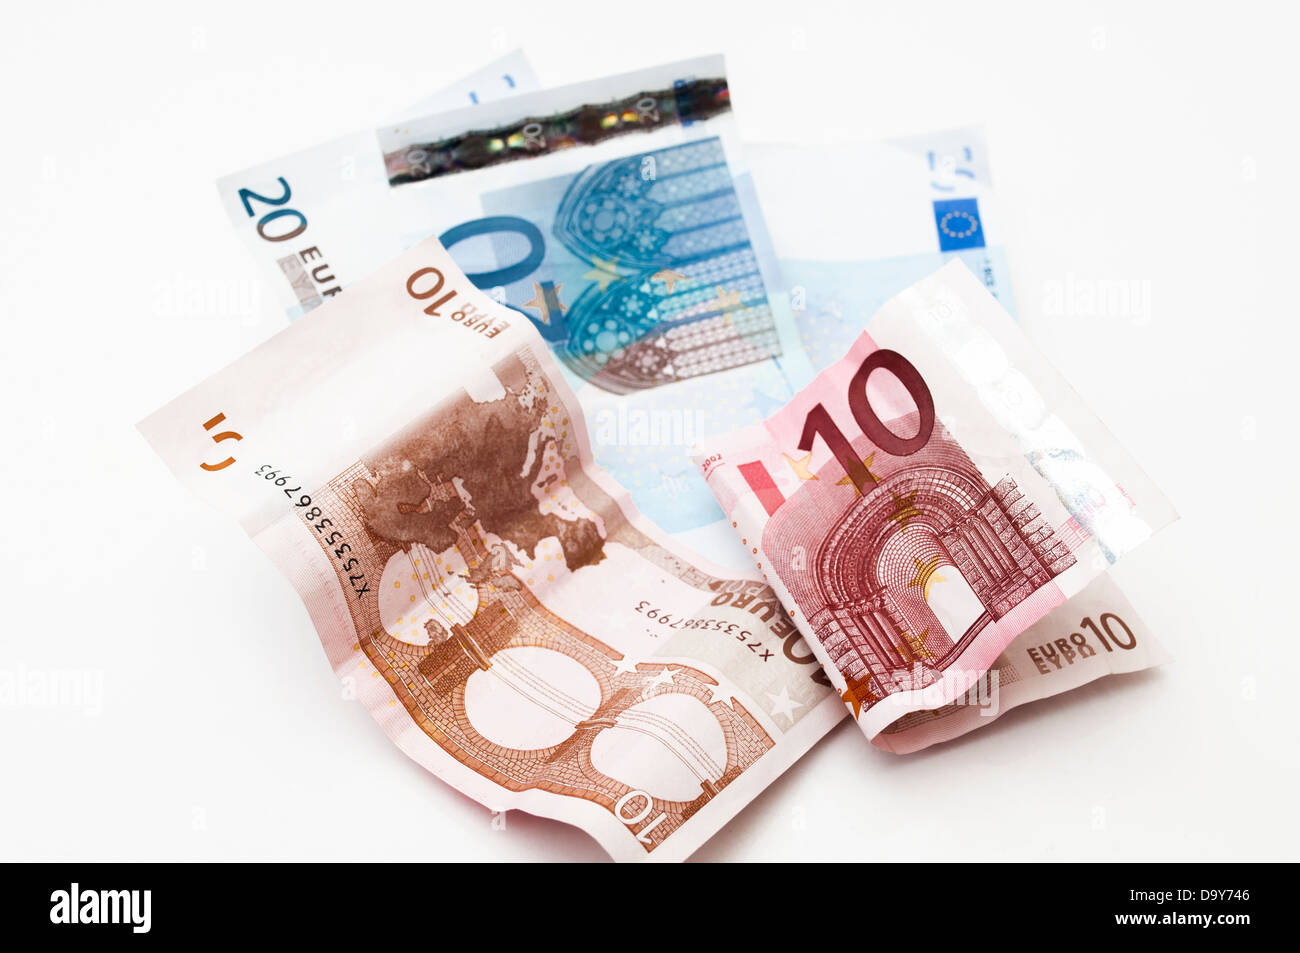 Euro money on a white background Stock Photo